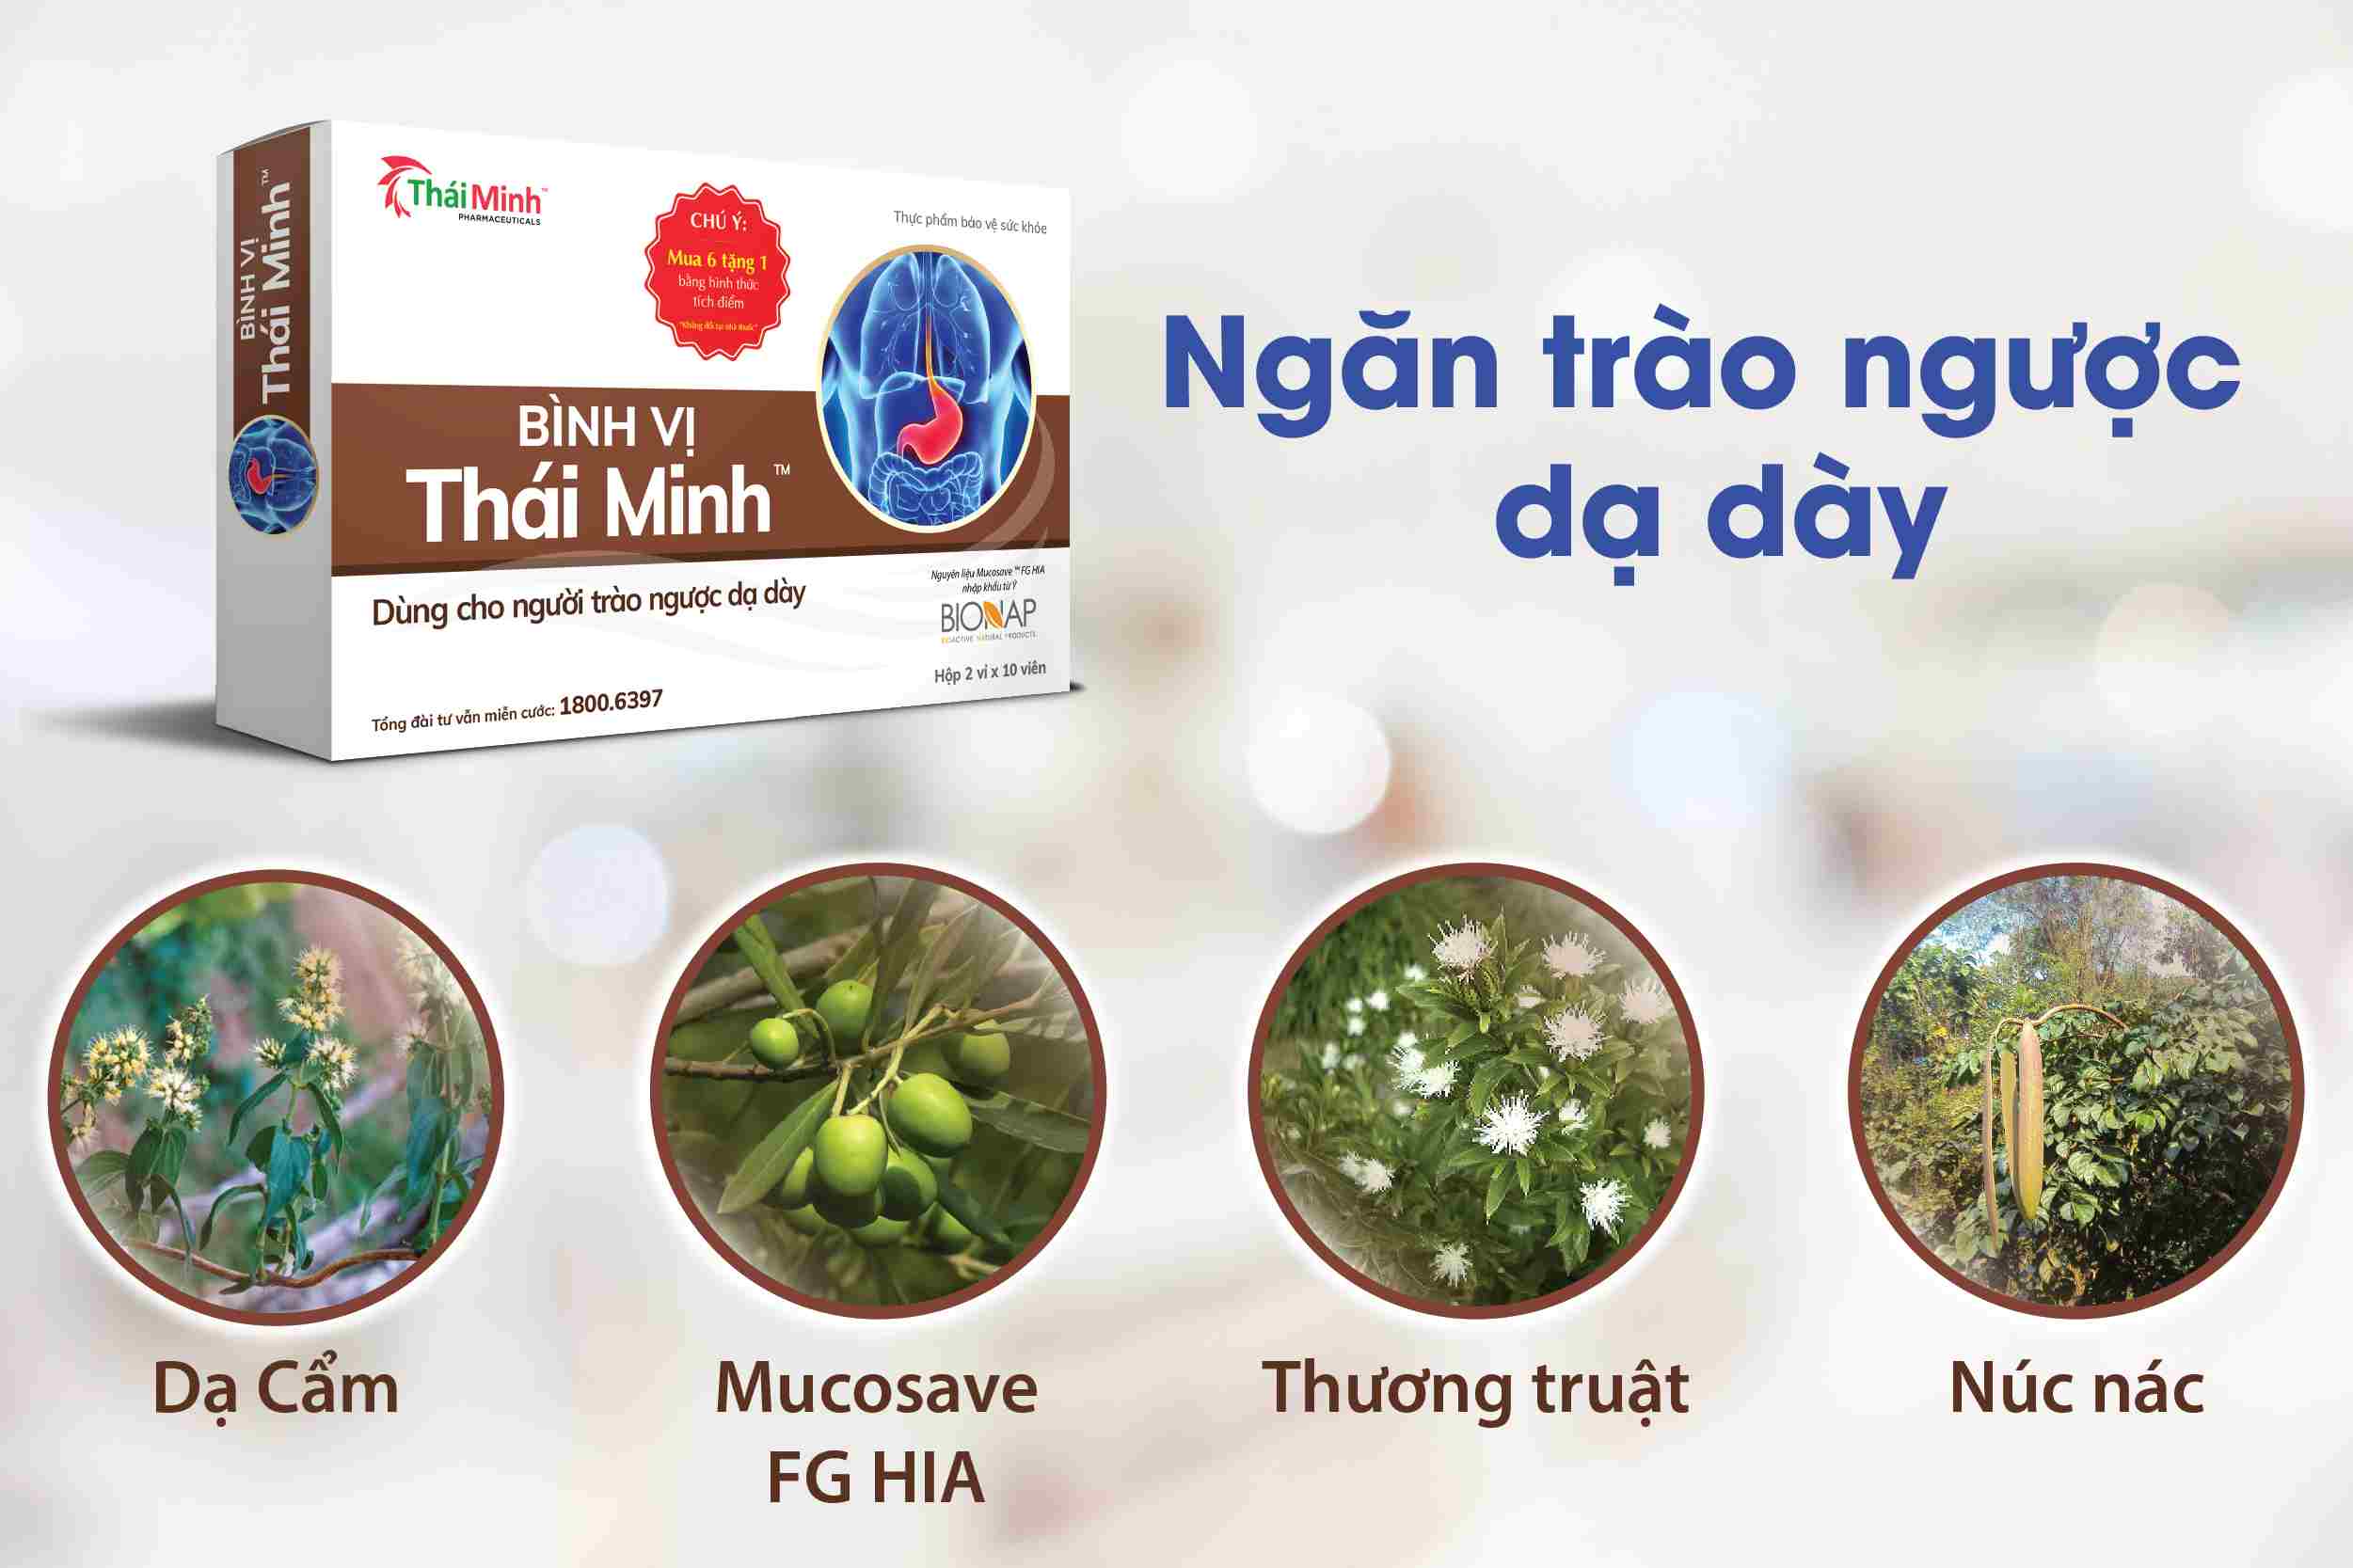 Bình vị Thái Minh - Giải pháp cho người bệnh trào ngược dạ dày 1